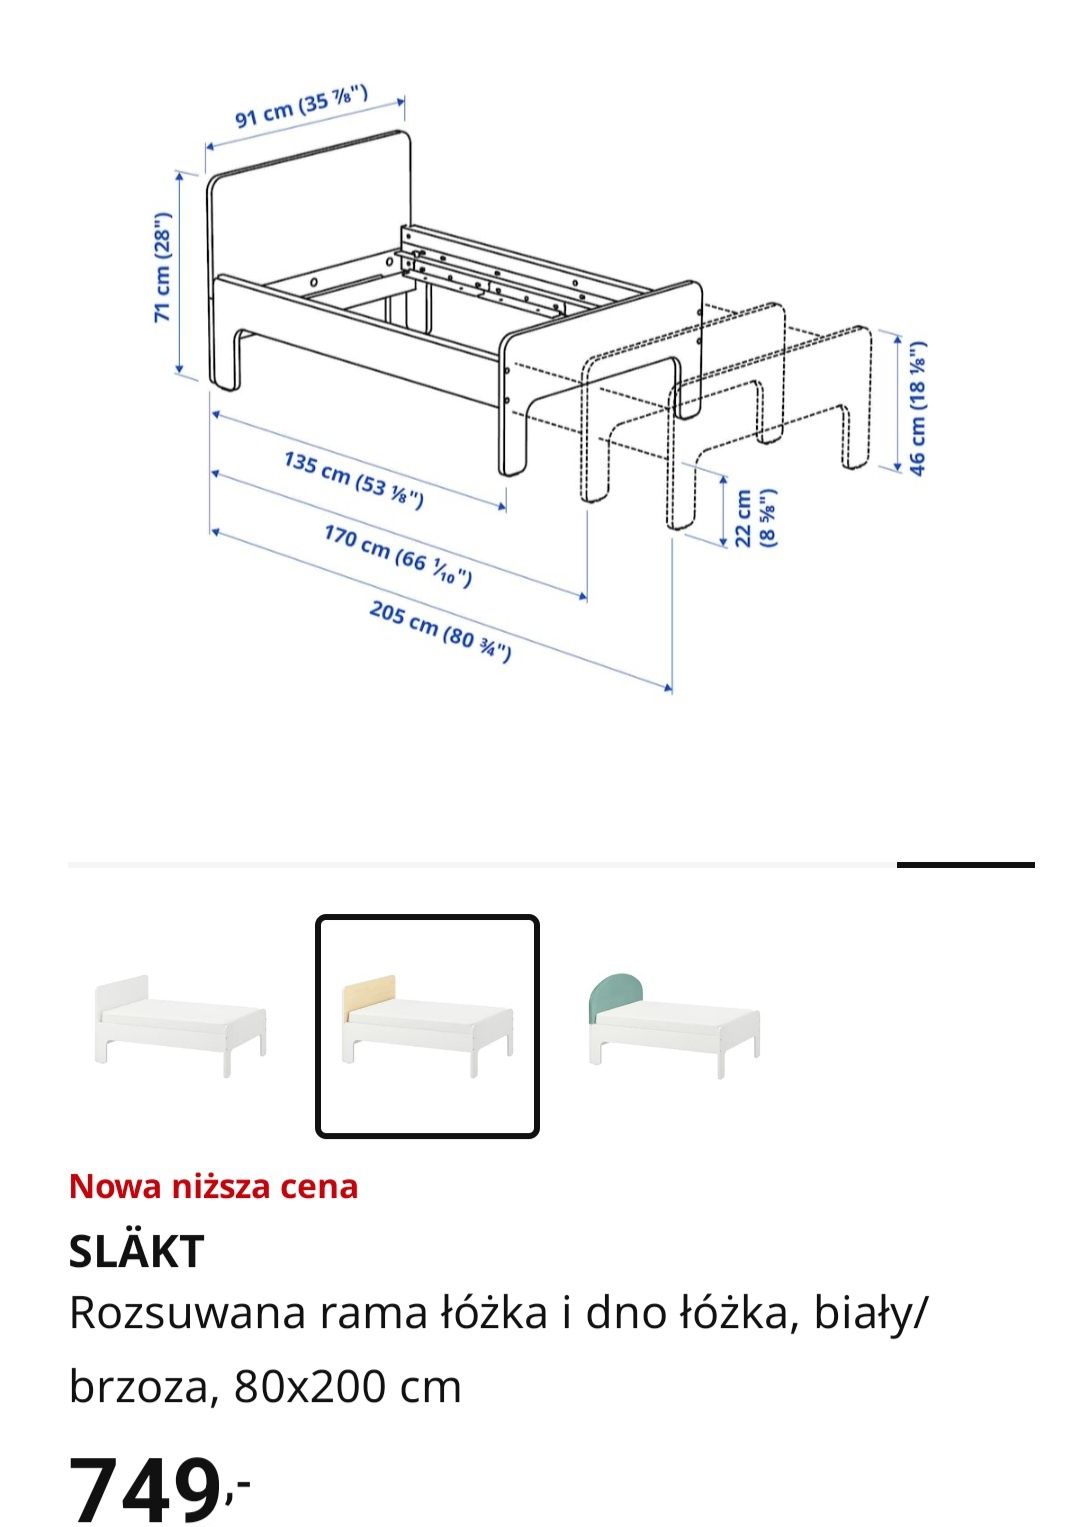 Łóżko dziecięce rozsuwane IKEA cena za 2 łóżka dostępne są 2 łóżka